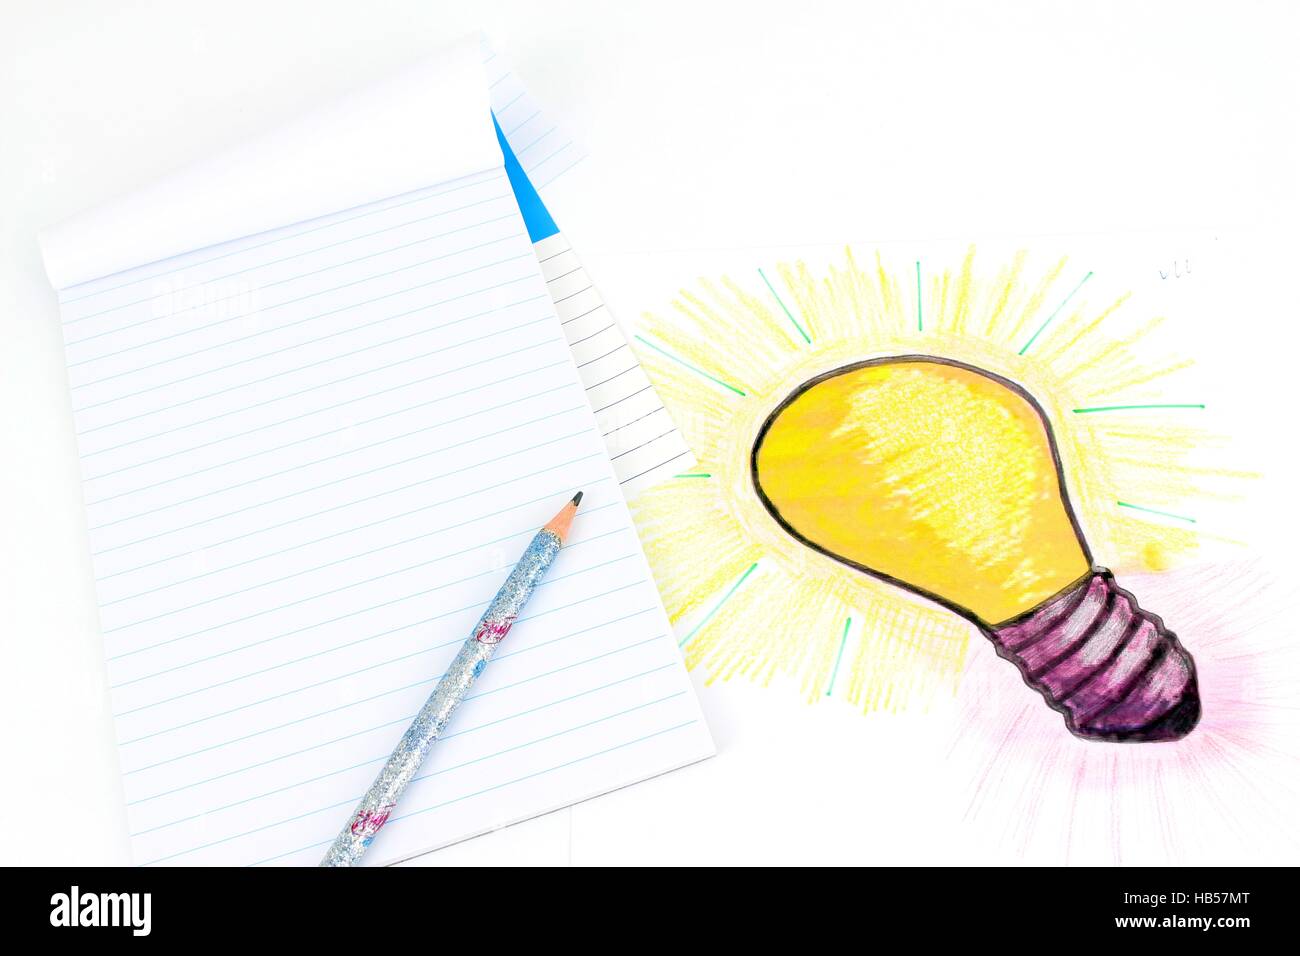 Une illustration stylisée d'une ampoule qui a été dessiné sur une feuille  de papier. Idée d'un projet, d'objets de dessin, de calcul Photo Stock -  Alamy